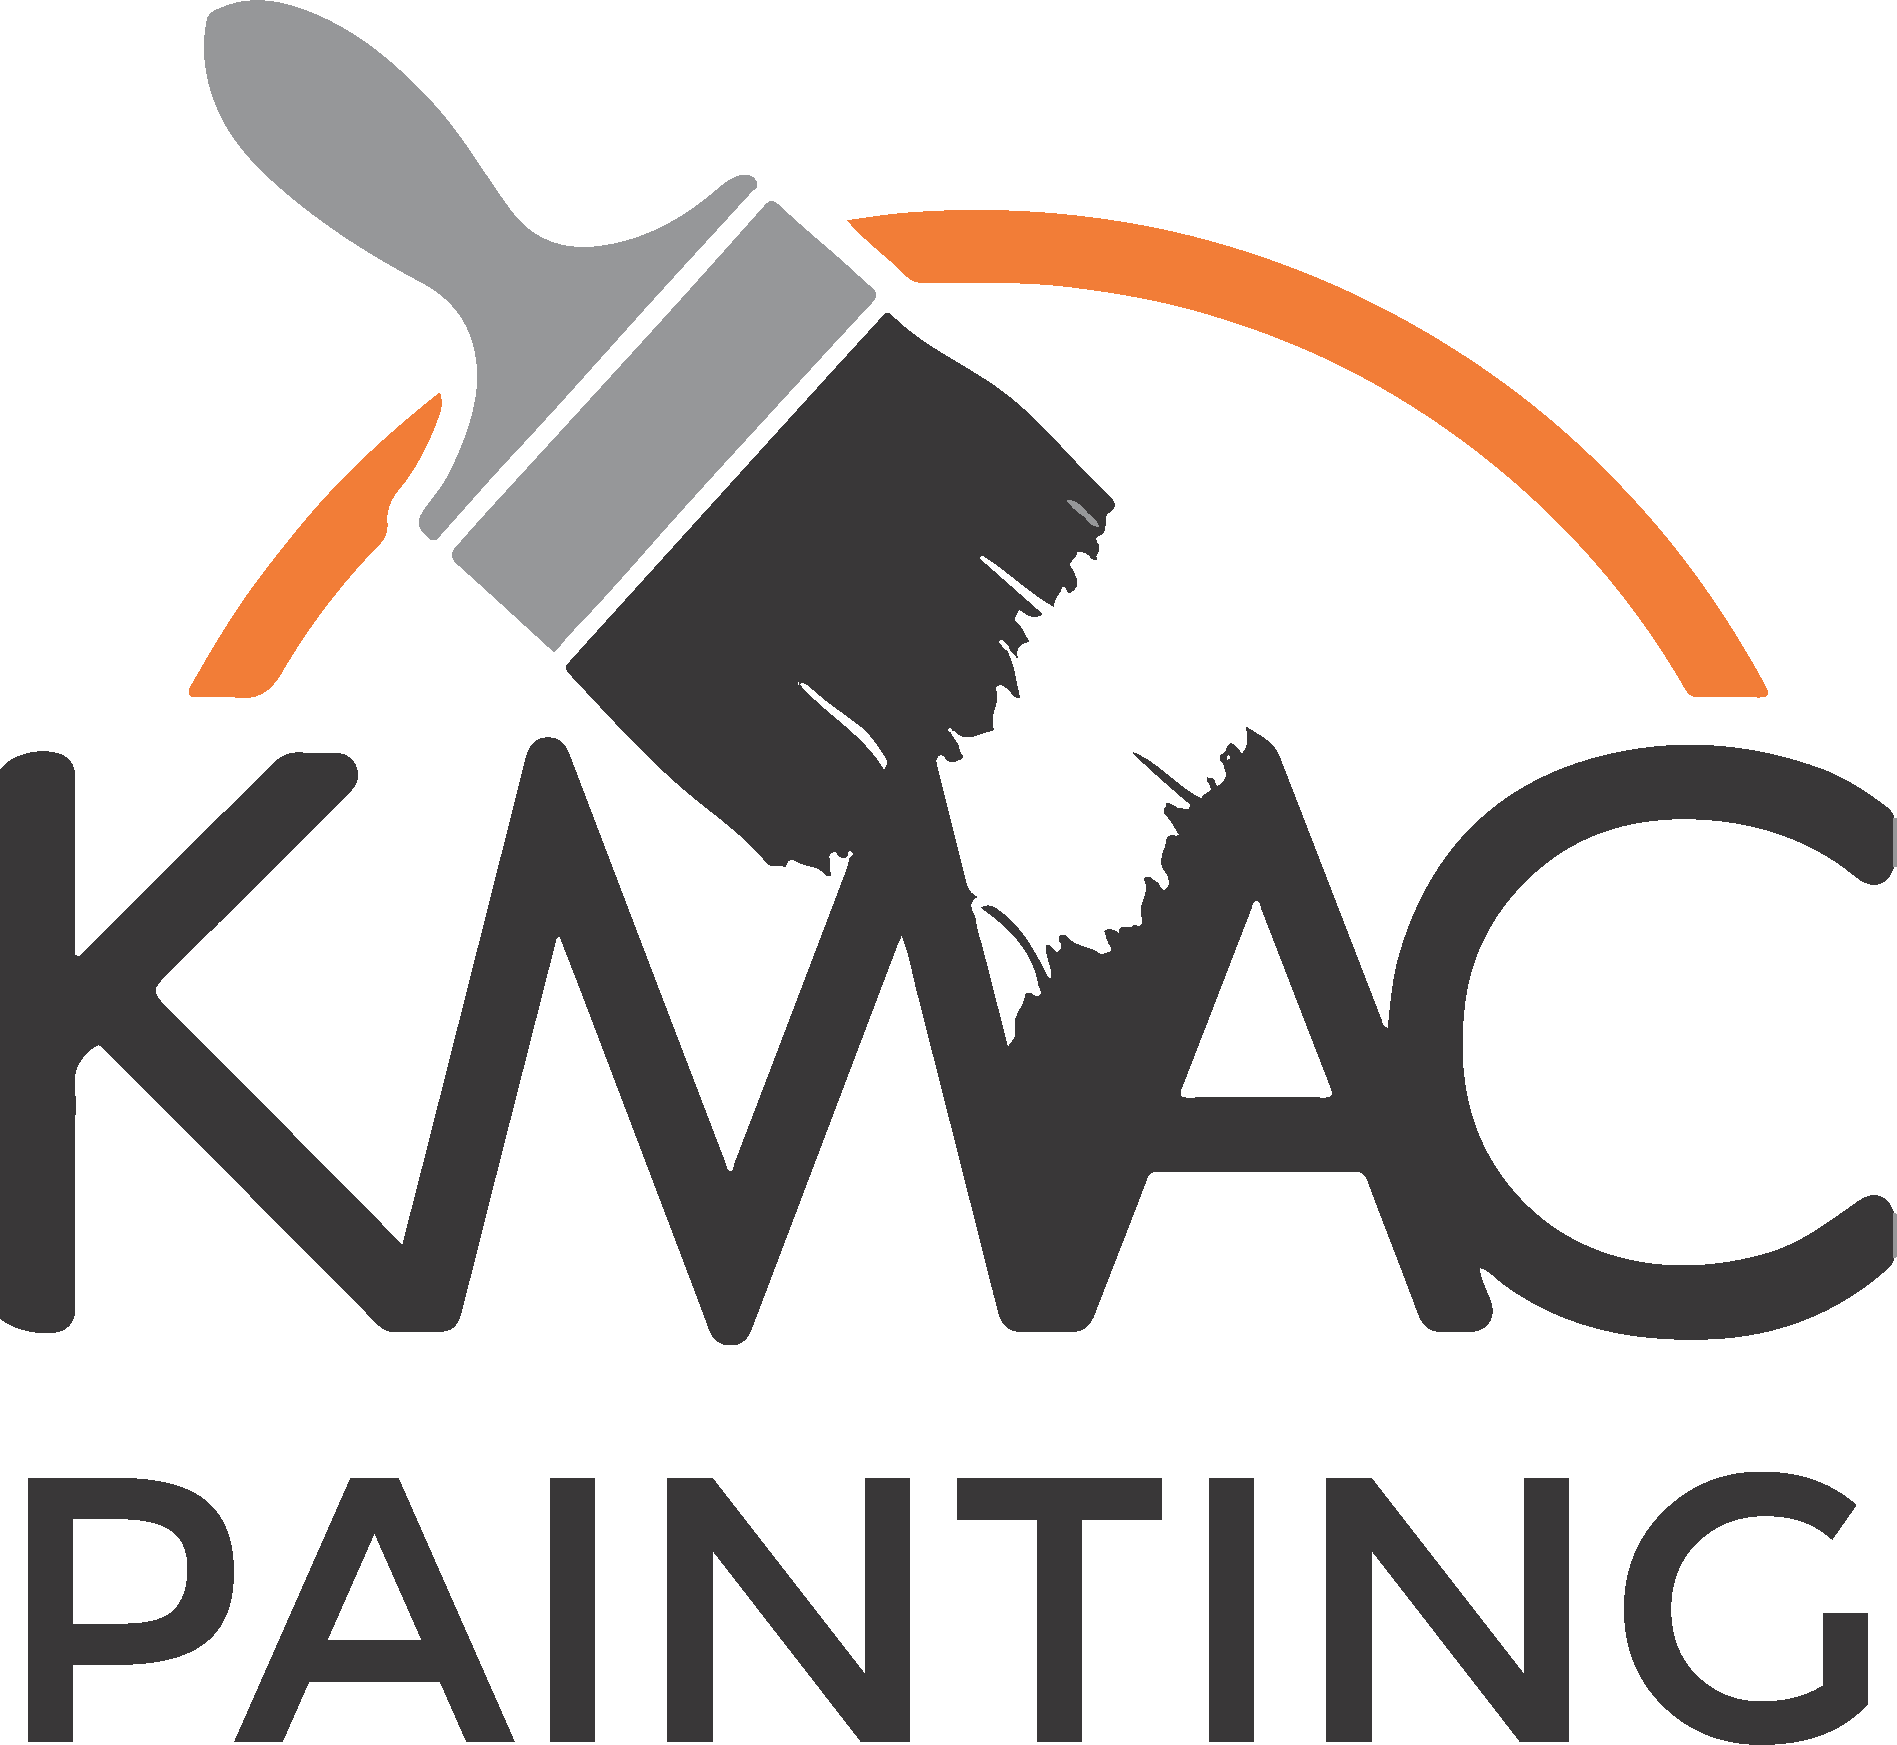 kmack painting logo